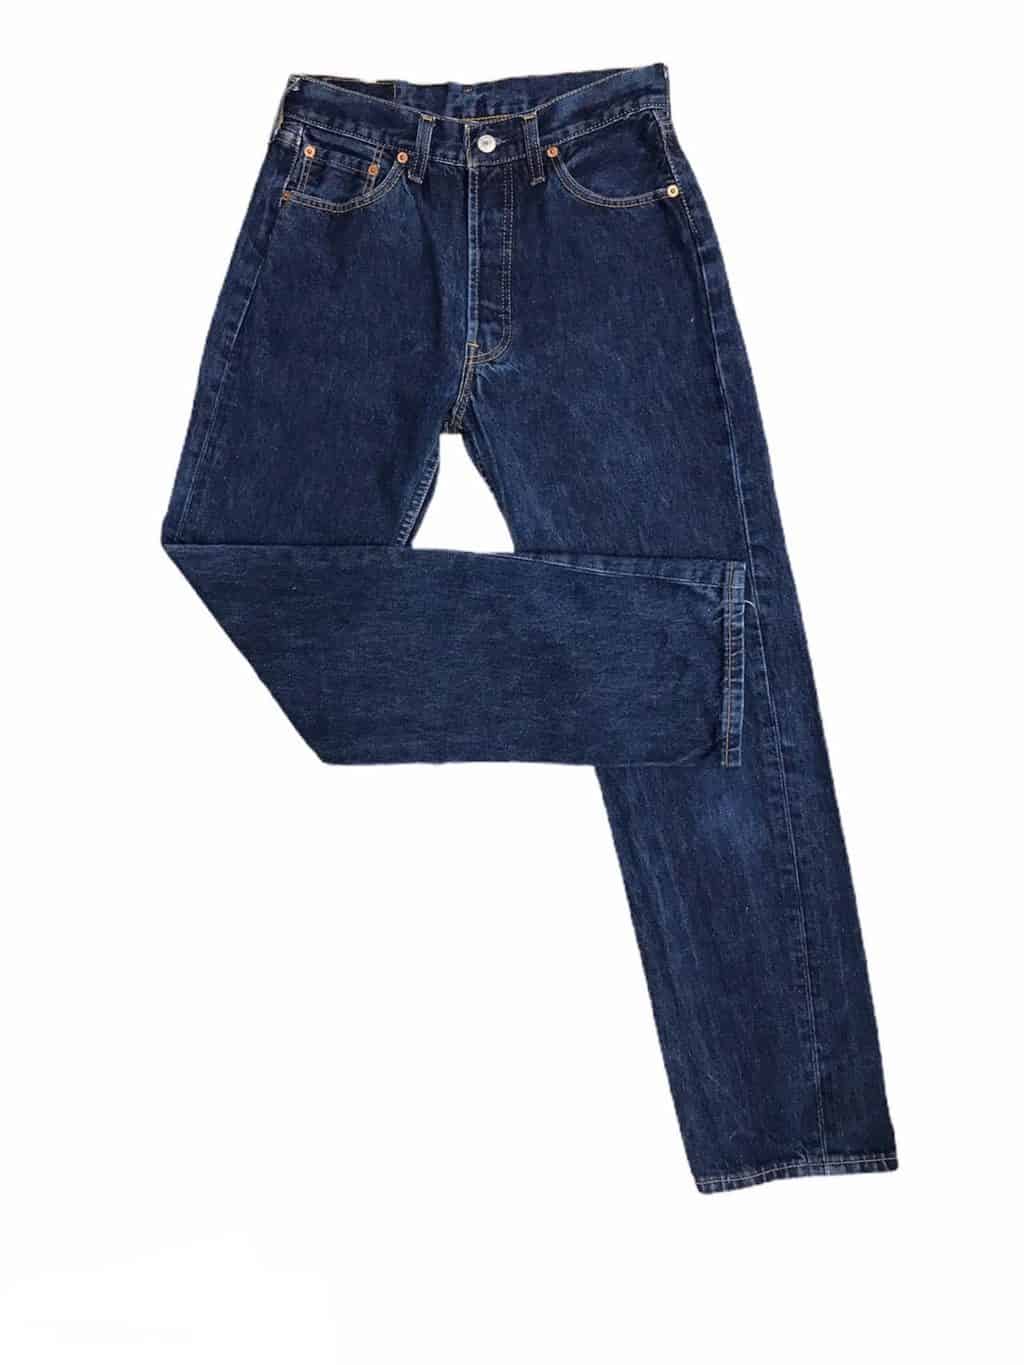 levis jeans 28 length